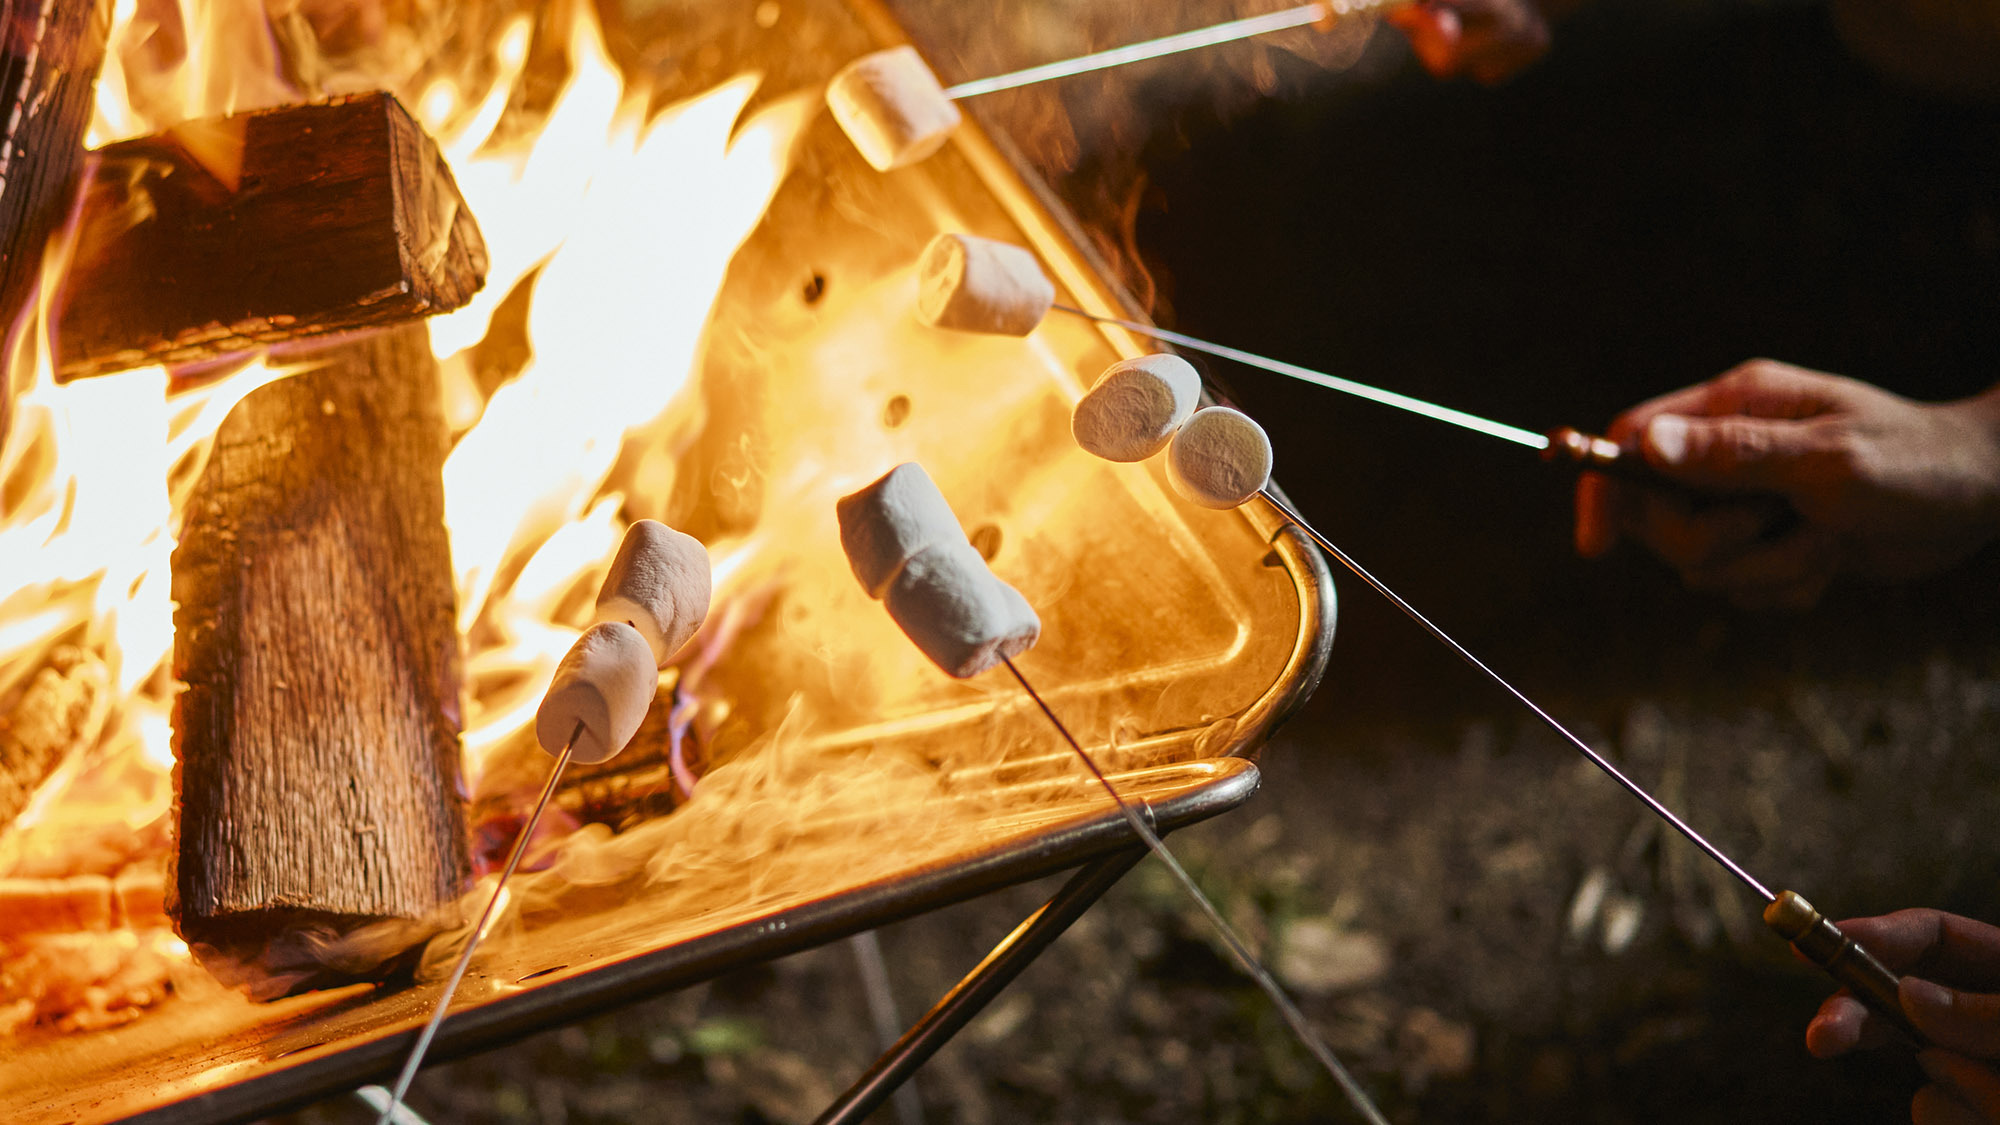 ・【キャンプファイヤー】弱火でじっくり、美味しいこんがりきつね色のおいしい焼マシュマロの完成です